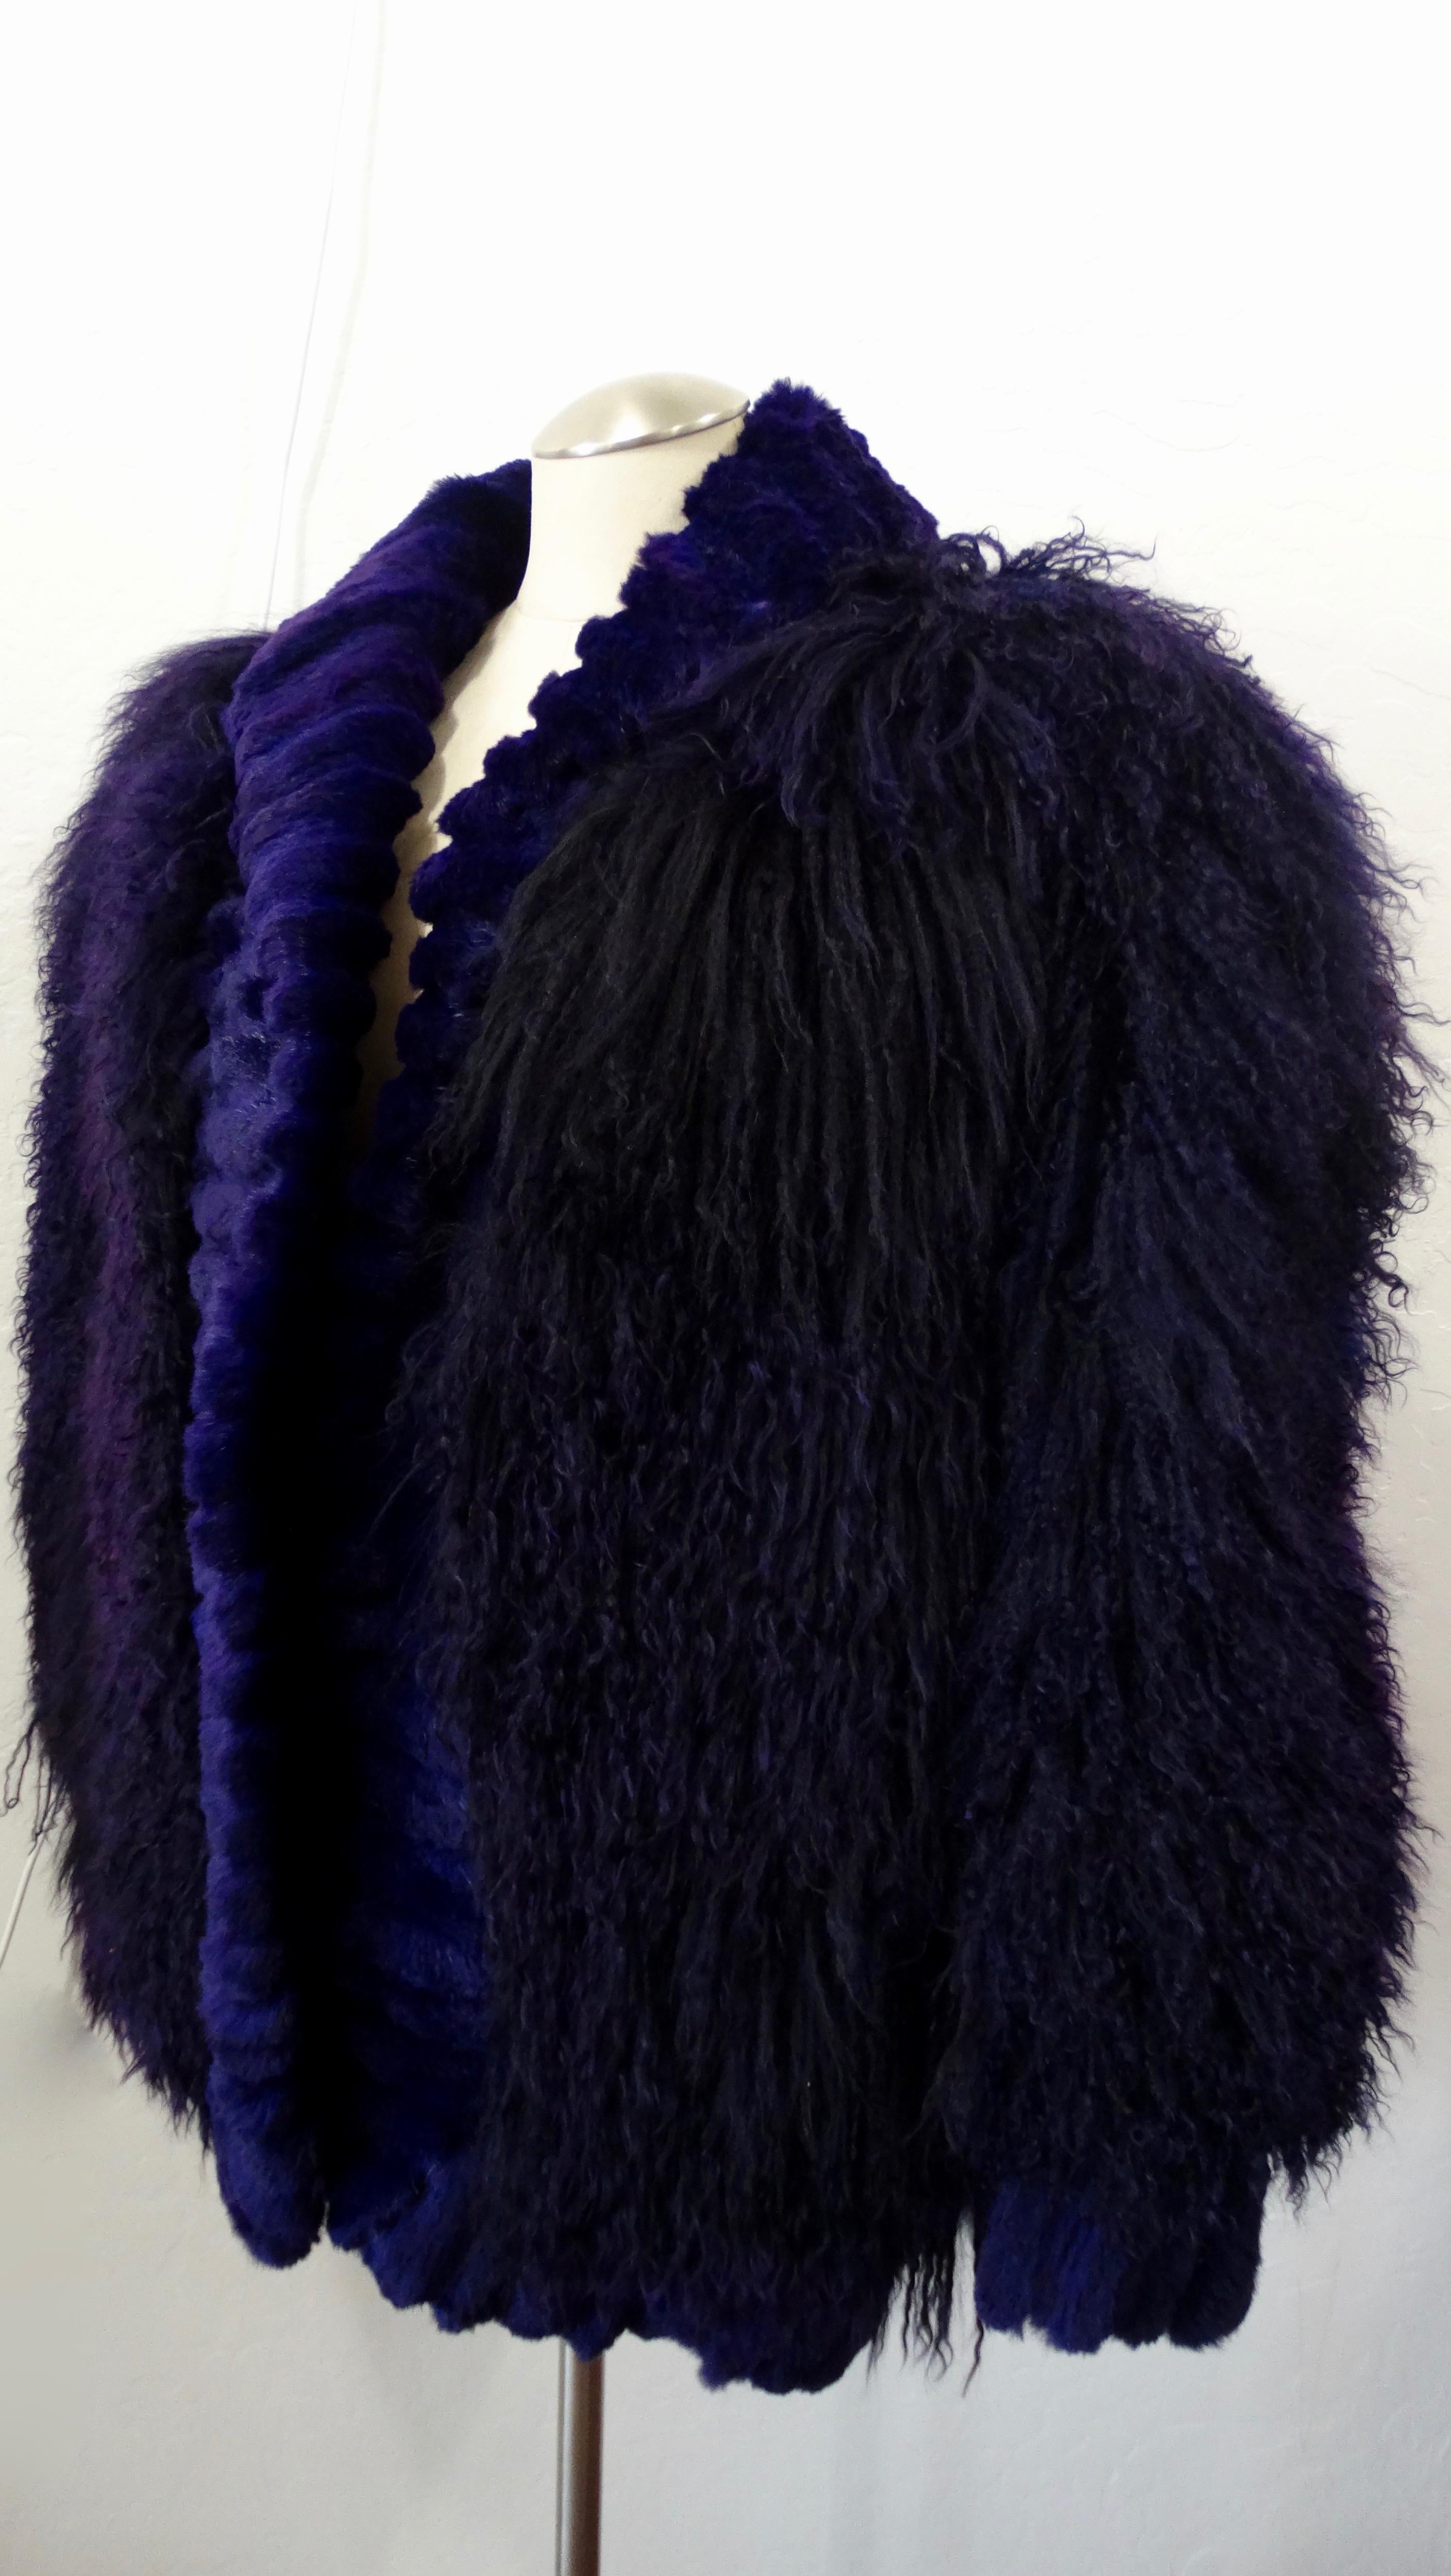 Mit Stil durch die kalte Jahreszeit! Diese übergroße Jacke aus den 1980er Jahren ist aus weichem, lila gefärbtem Mongolenlamm gefertigt und mit einem farblich abgestimmten Kaninchenfellbesatz am gesamten Saum und an den Manschetten versehen. Mit